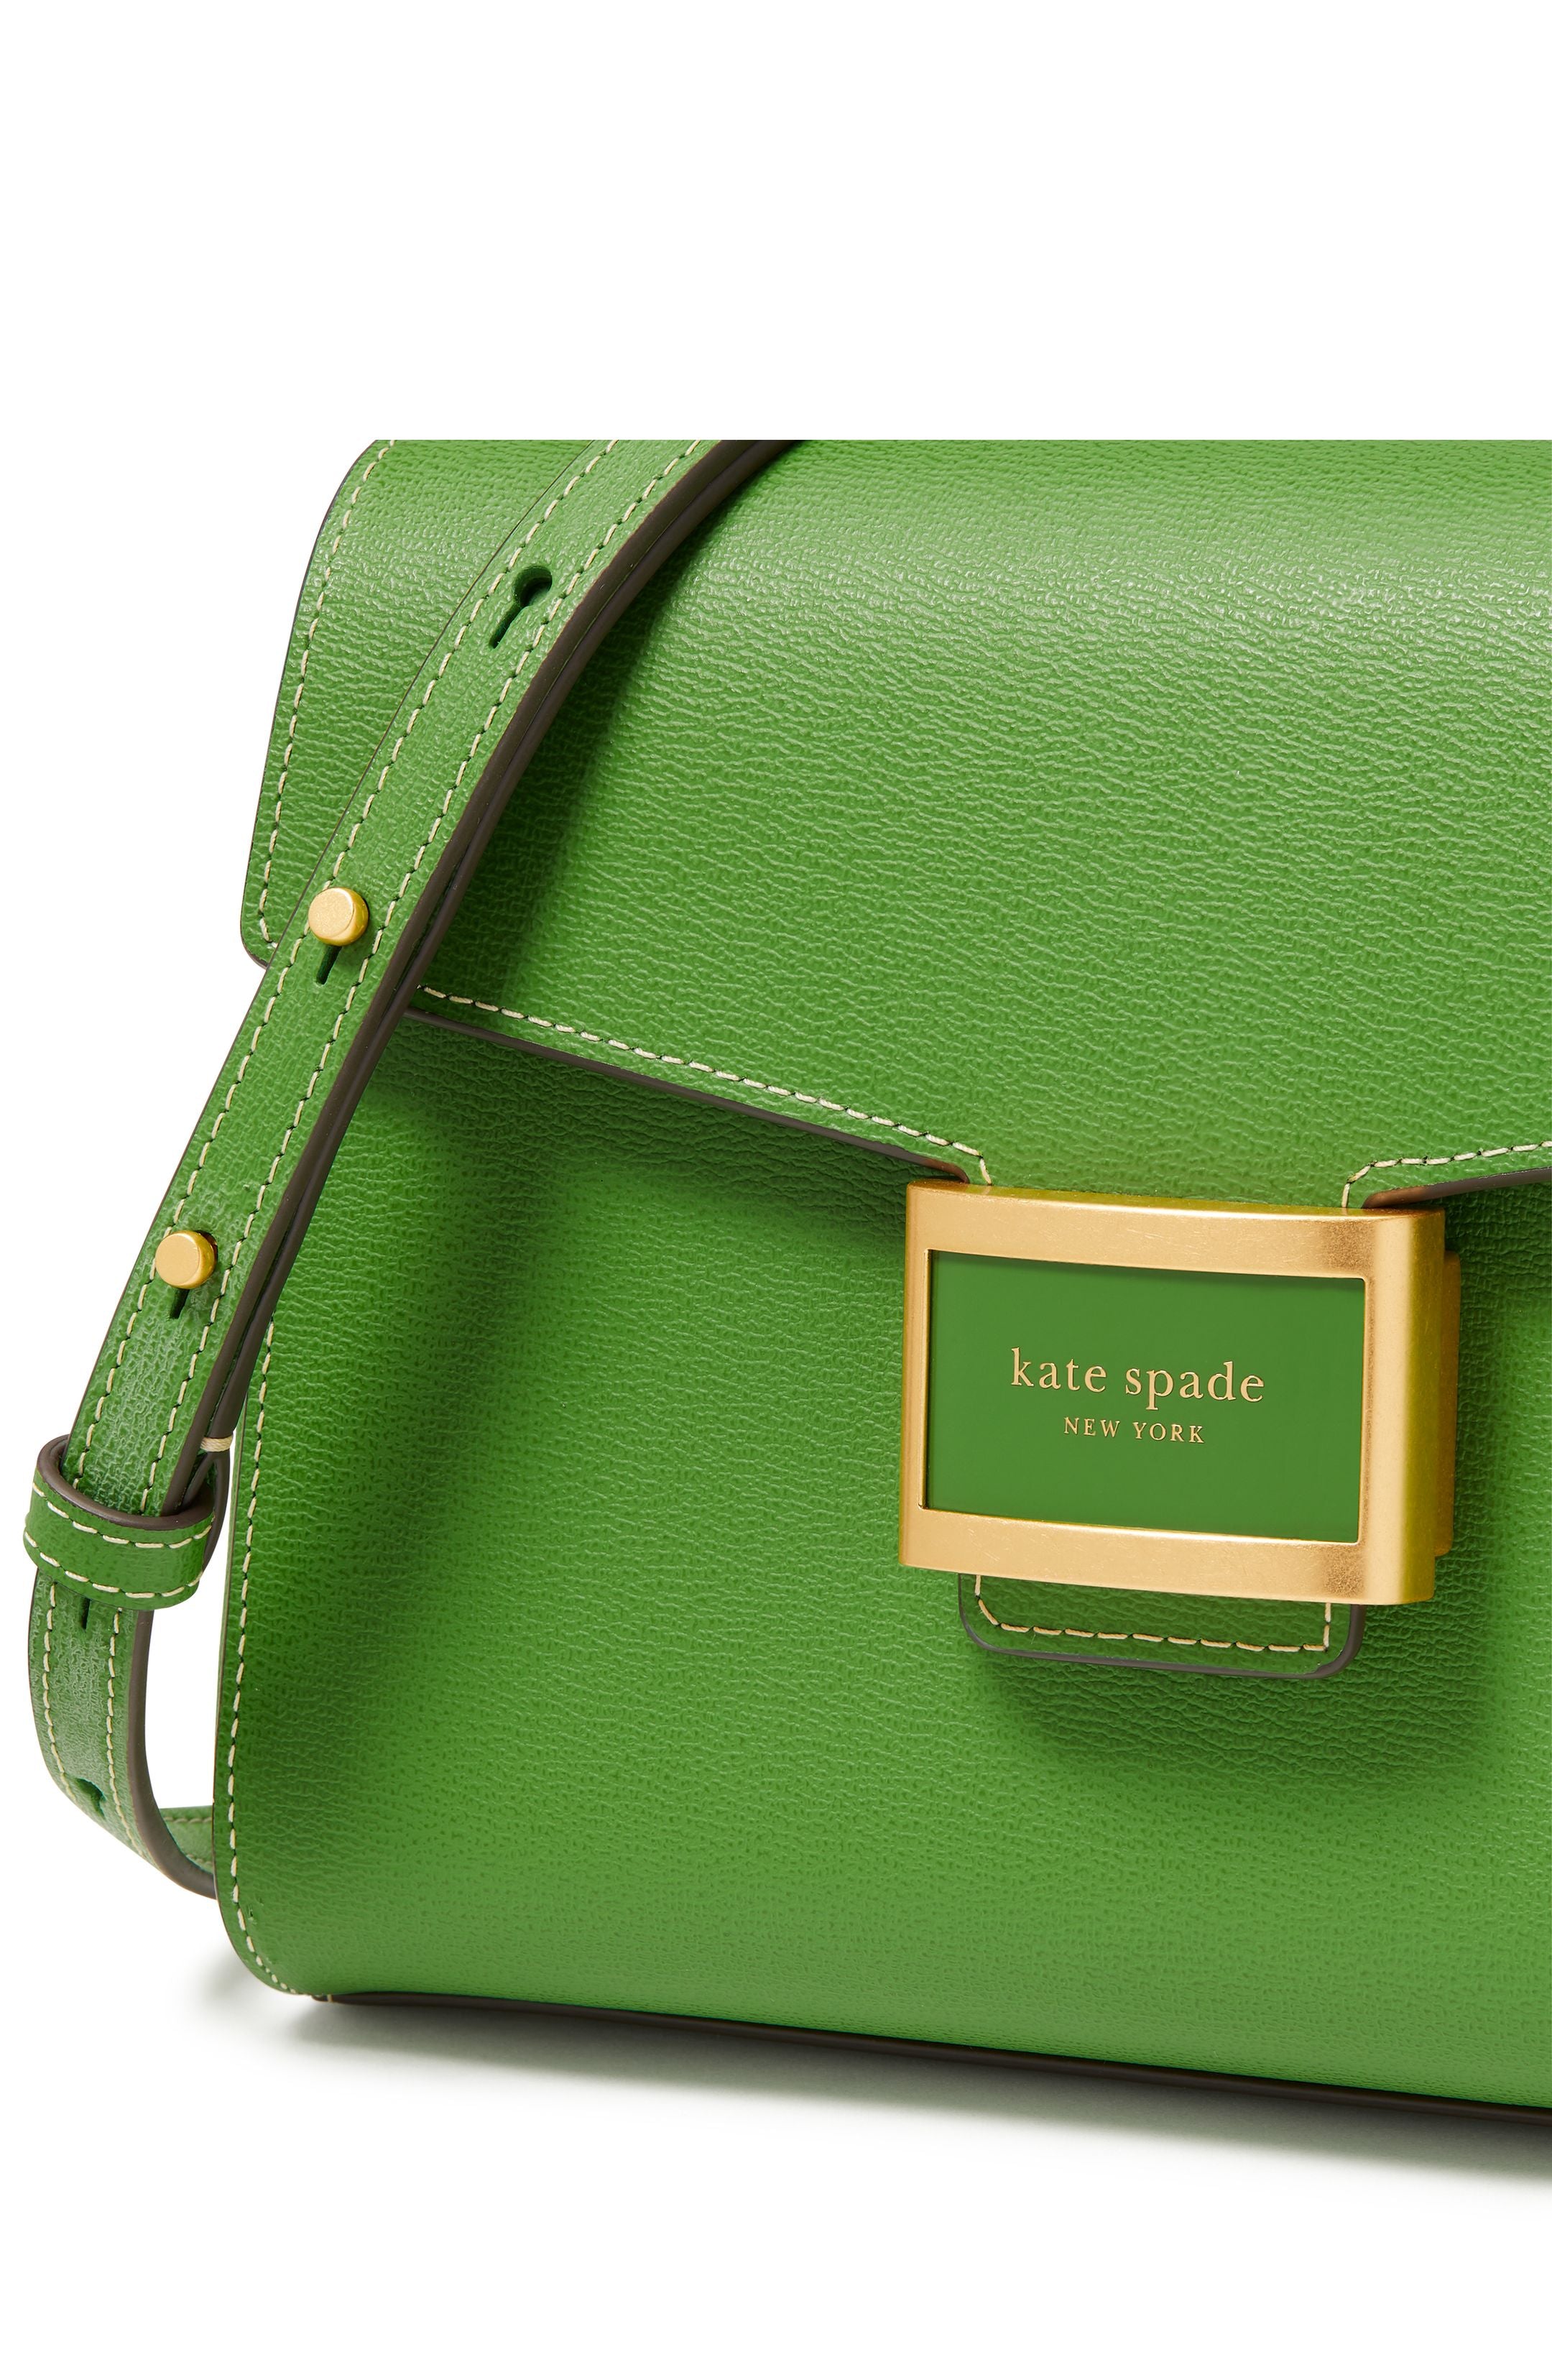 ke122_Katy Small Top-handle Bag_Ks Green